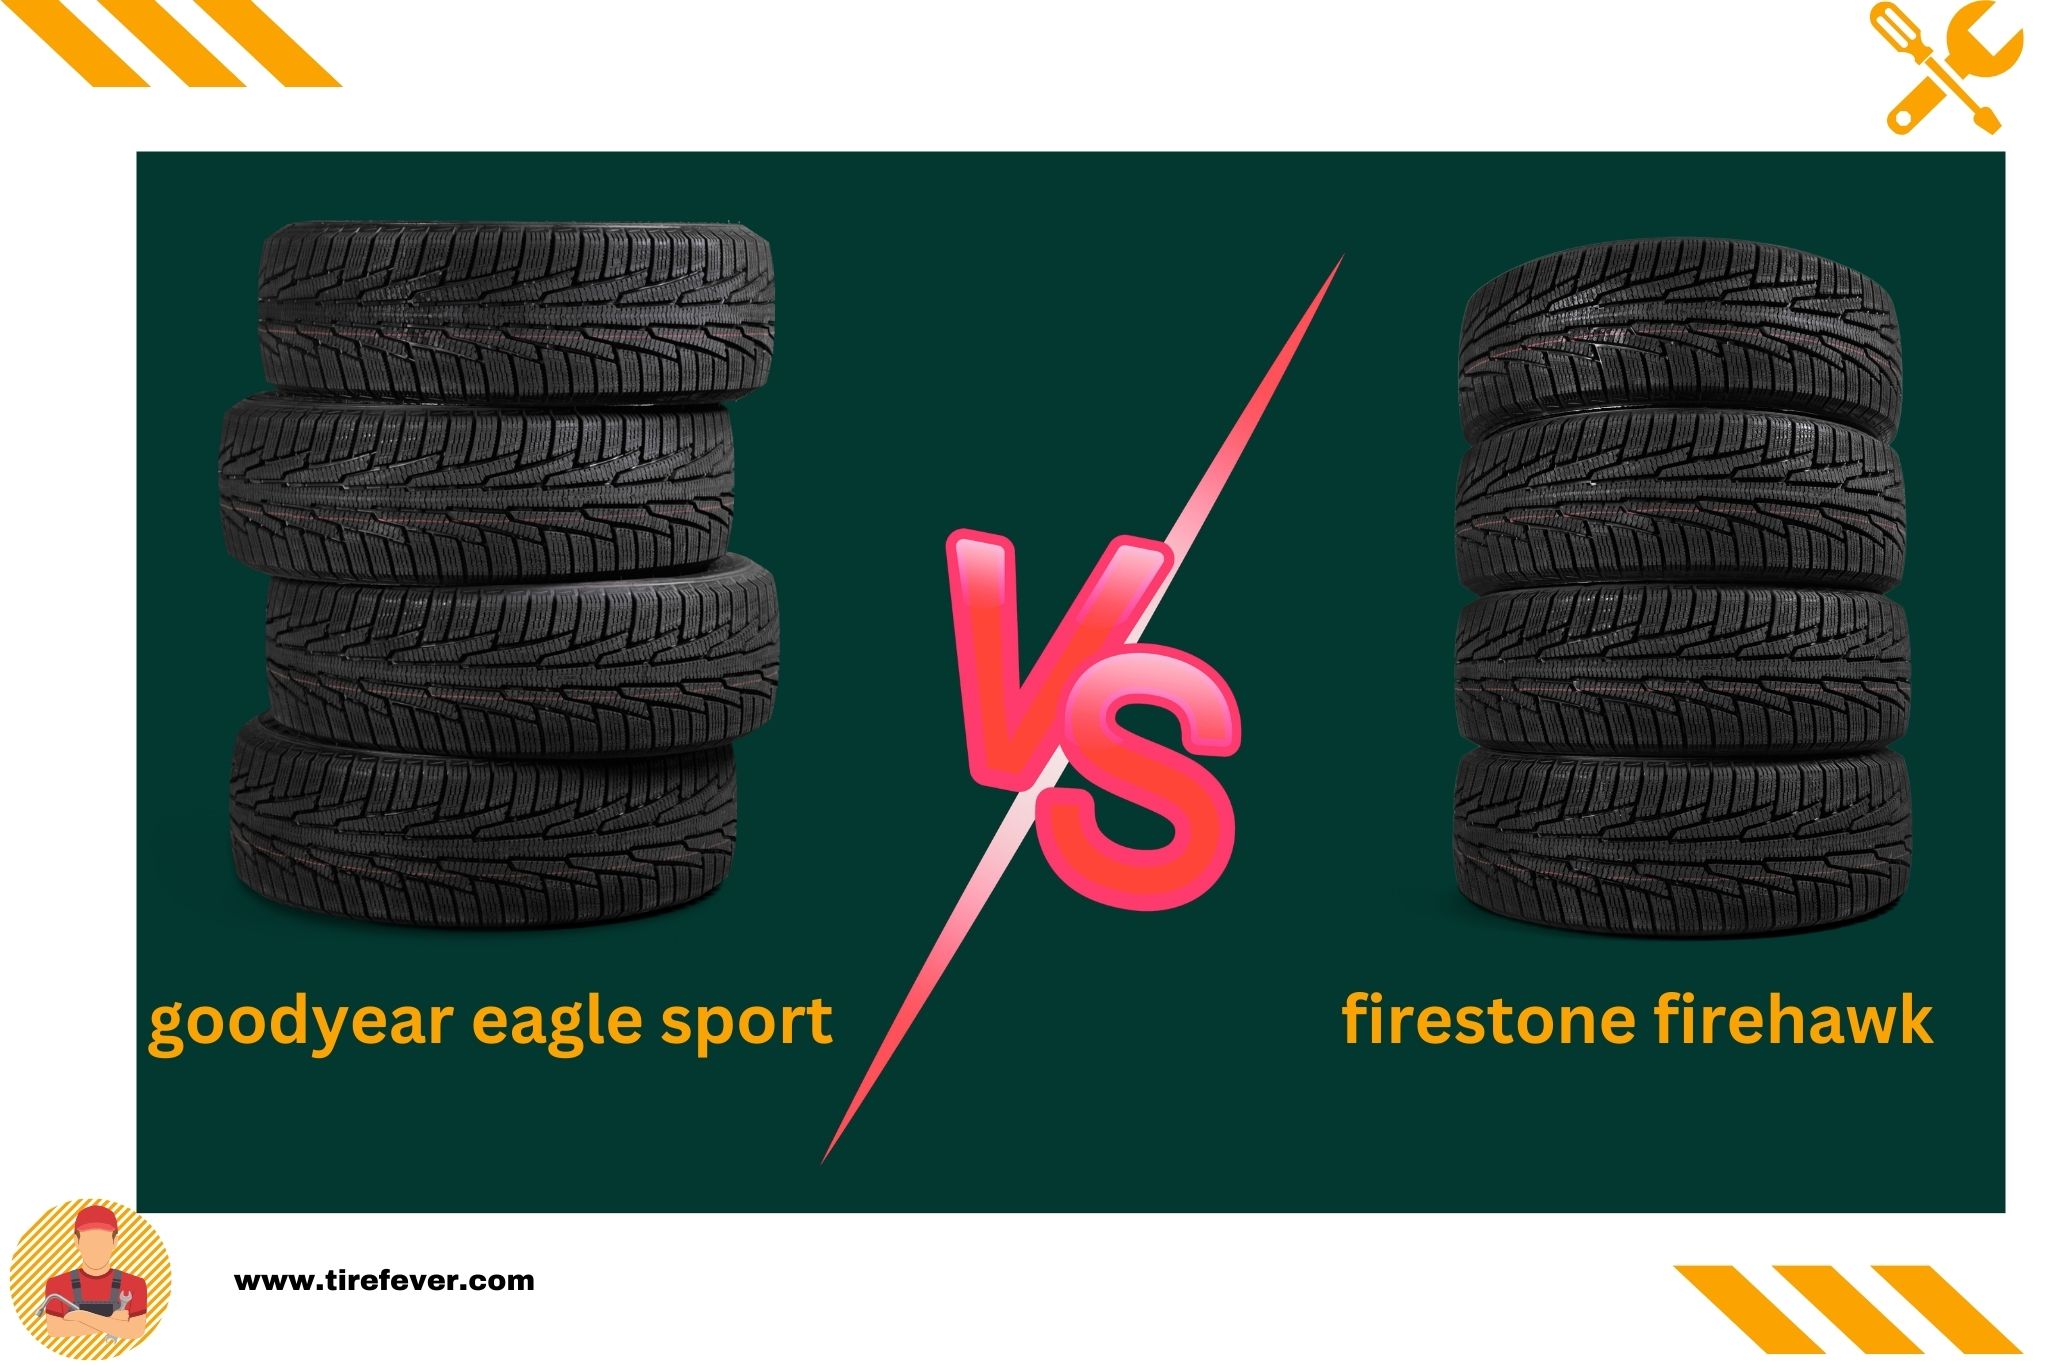 goodyear eagle sport vs firestone firehawk